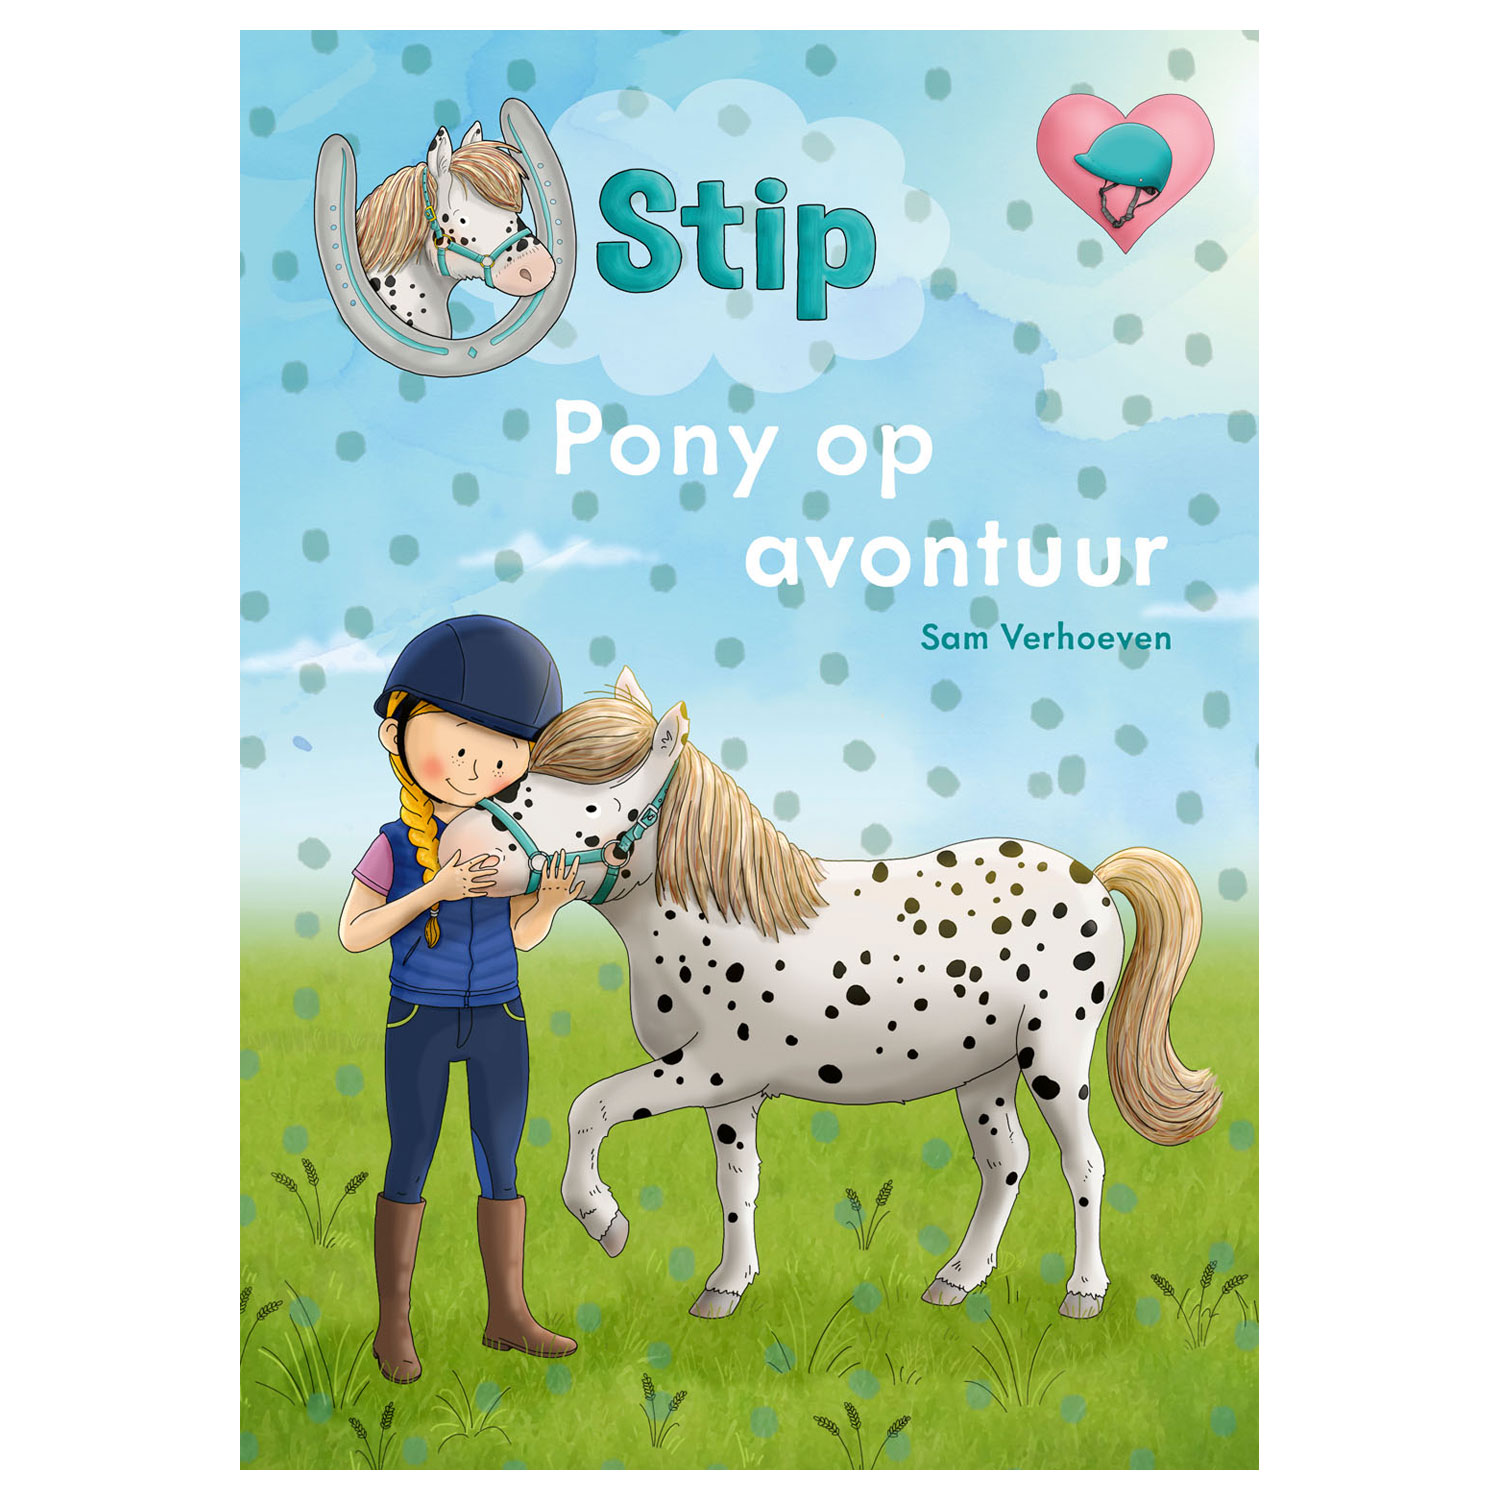 Stip - Pony op avontuur